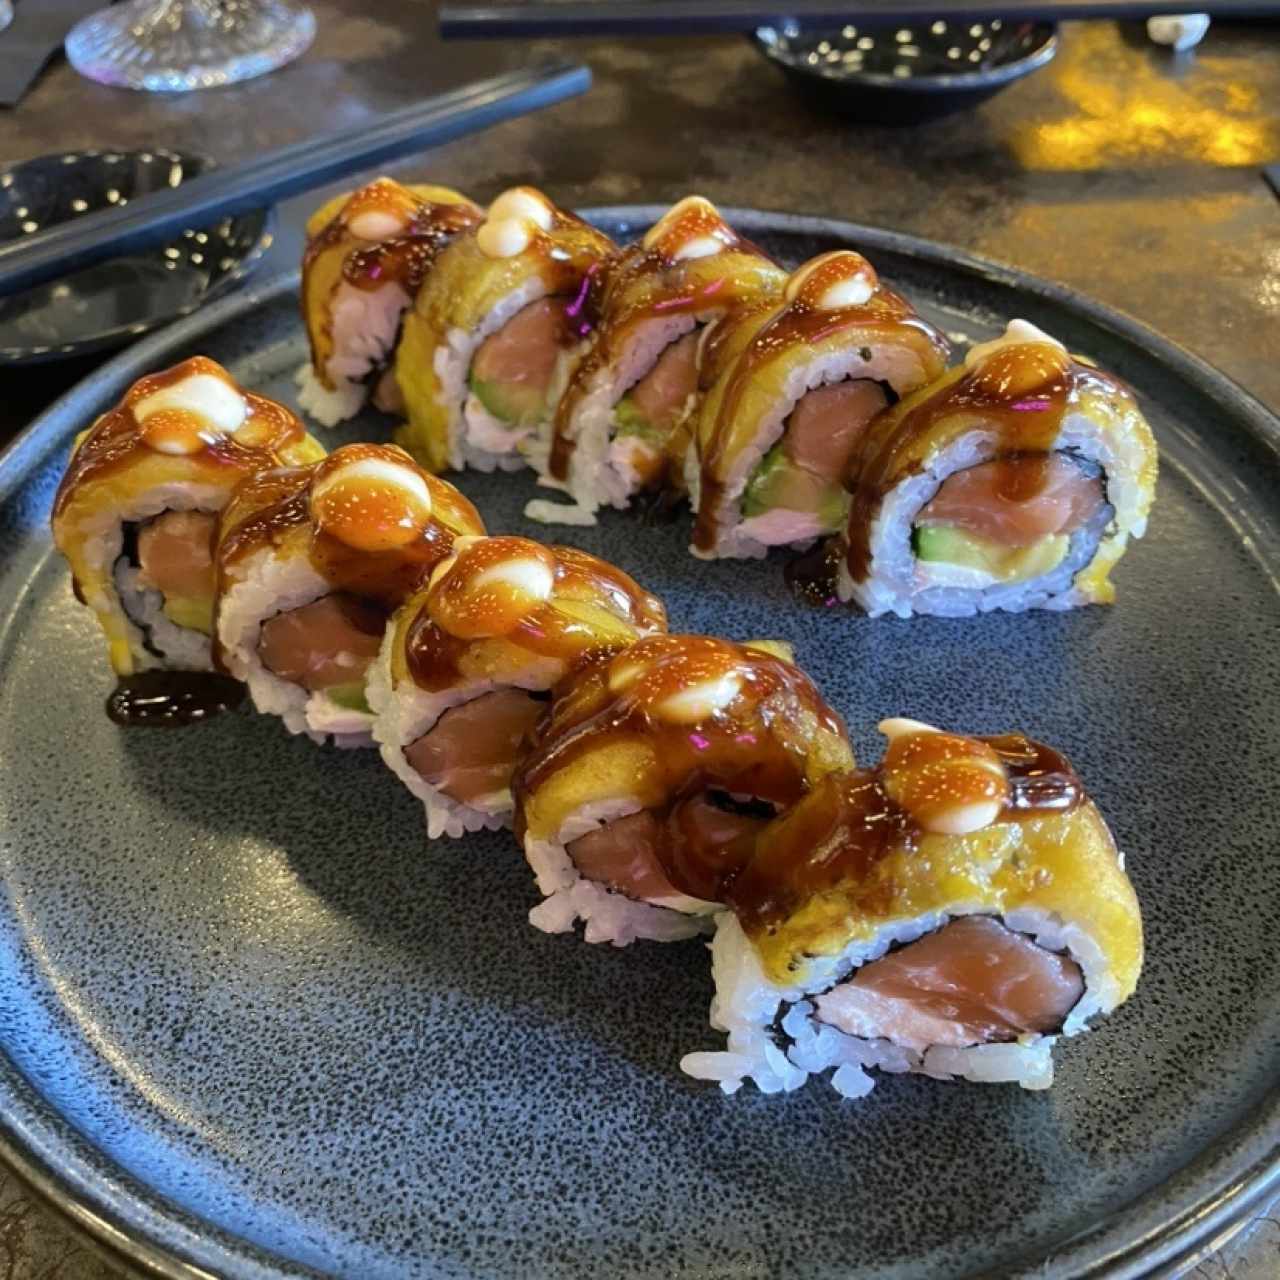 Sushi Rolls - Tropical Roll